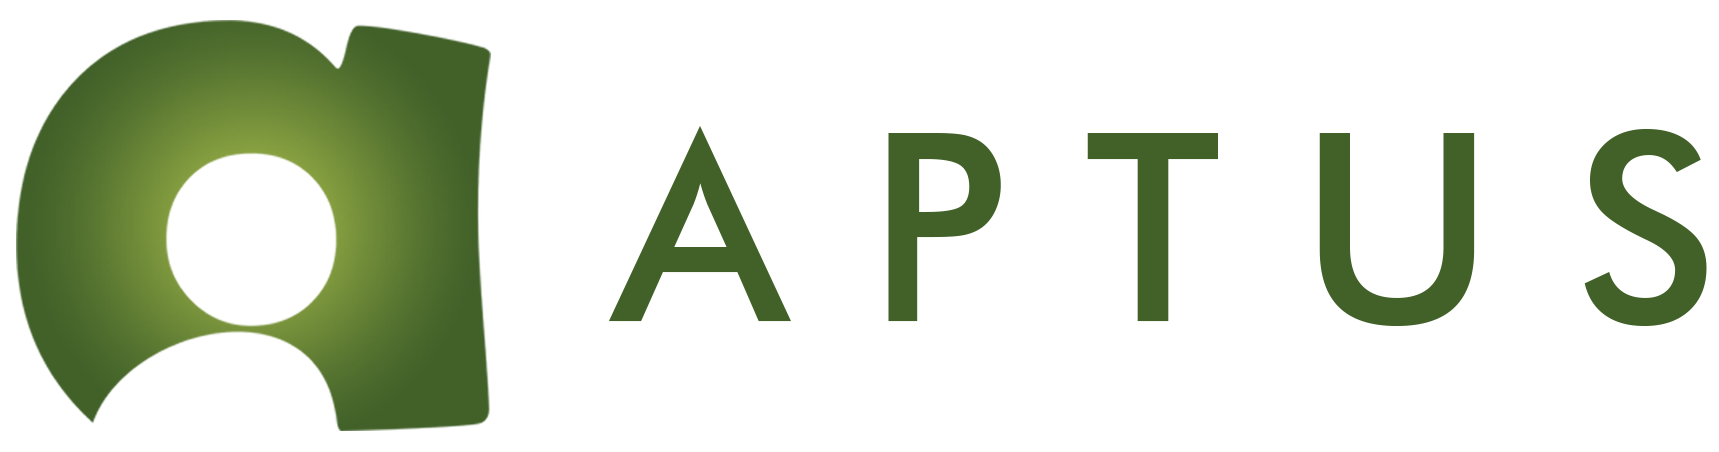 Aptus logo